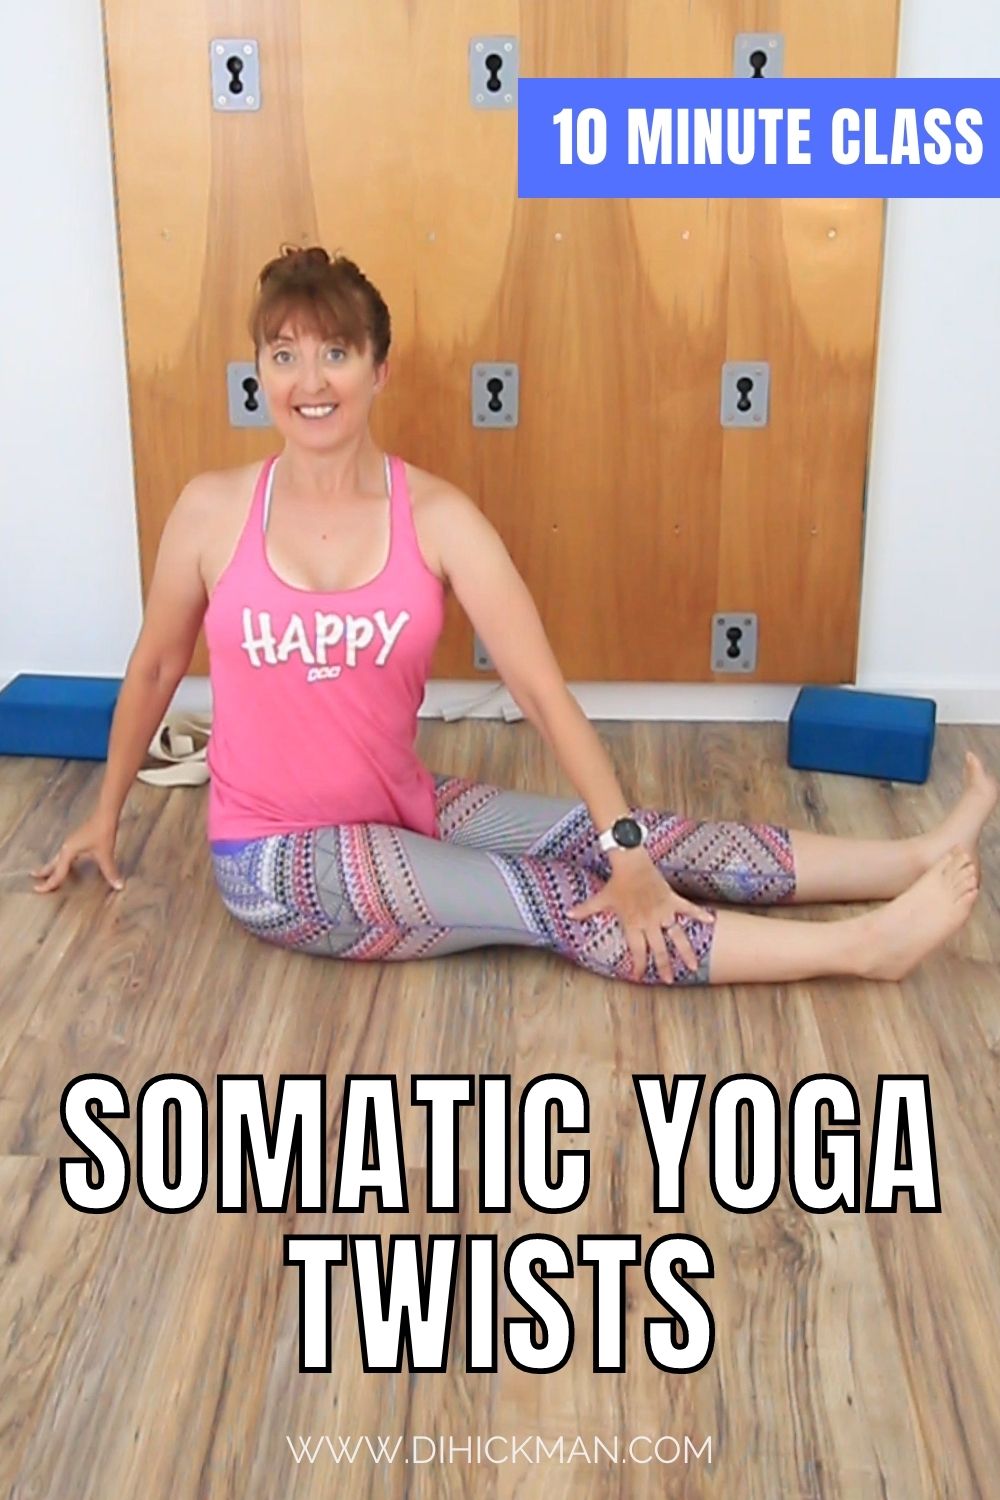 somatic yoga twists